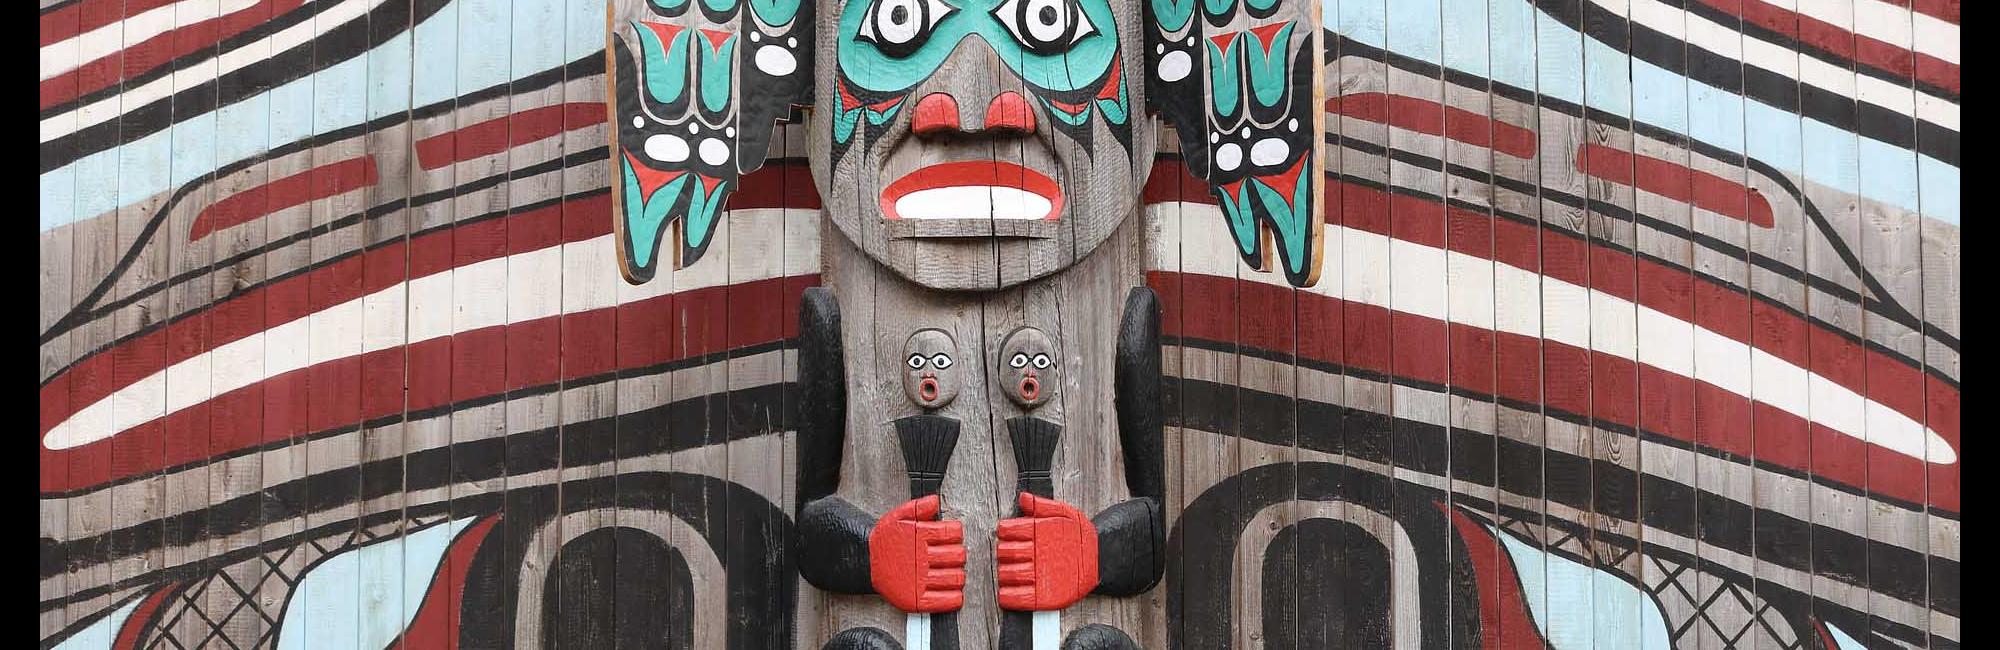 colorful totem in Alaska